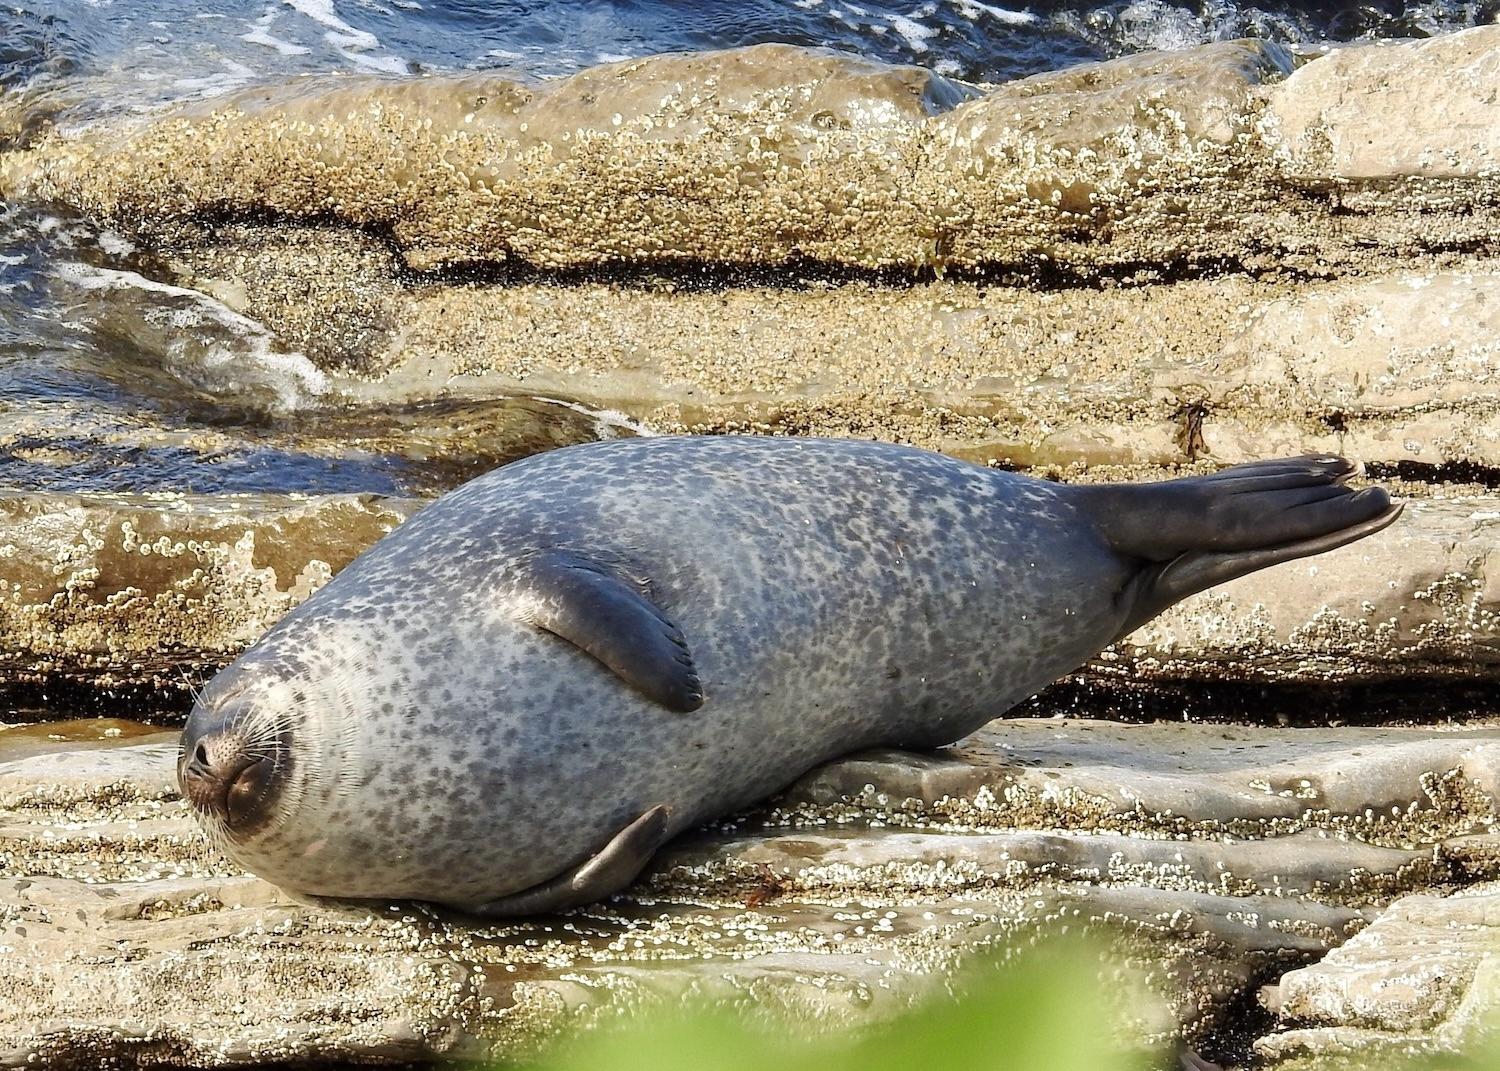 I spot this plump seal sunbathing on the shore of Forillon National Park in September.